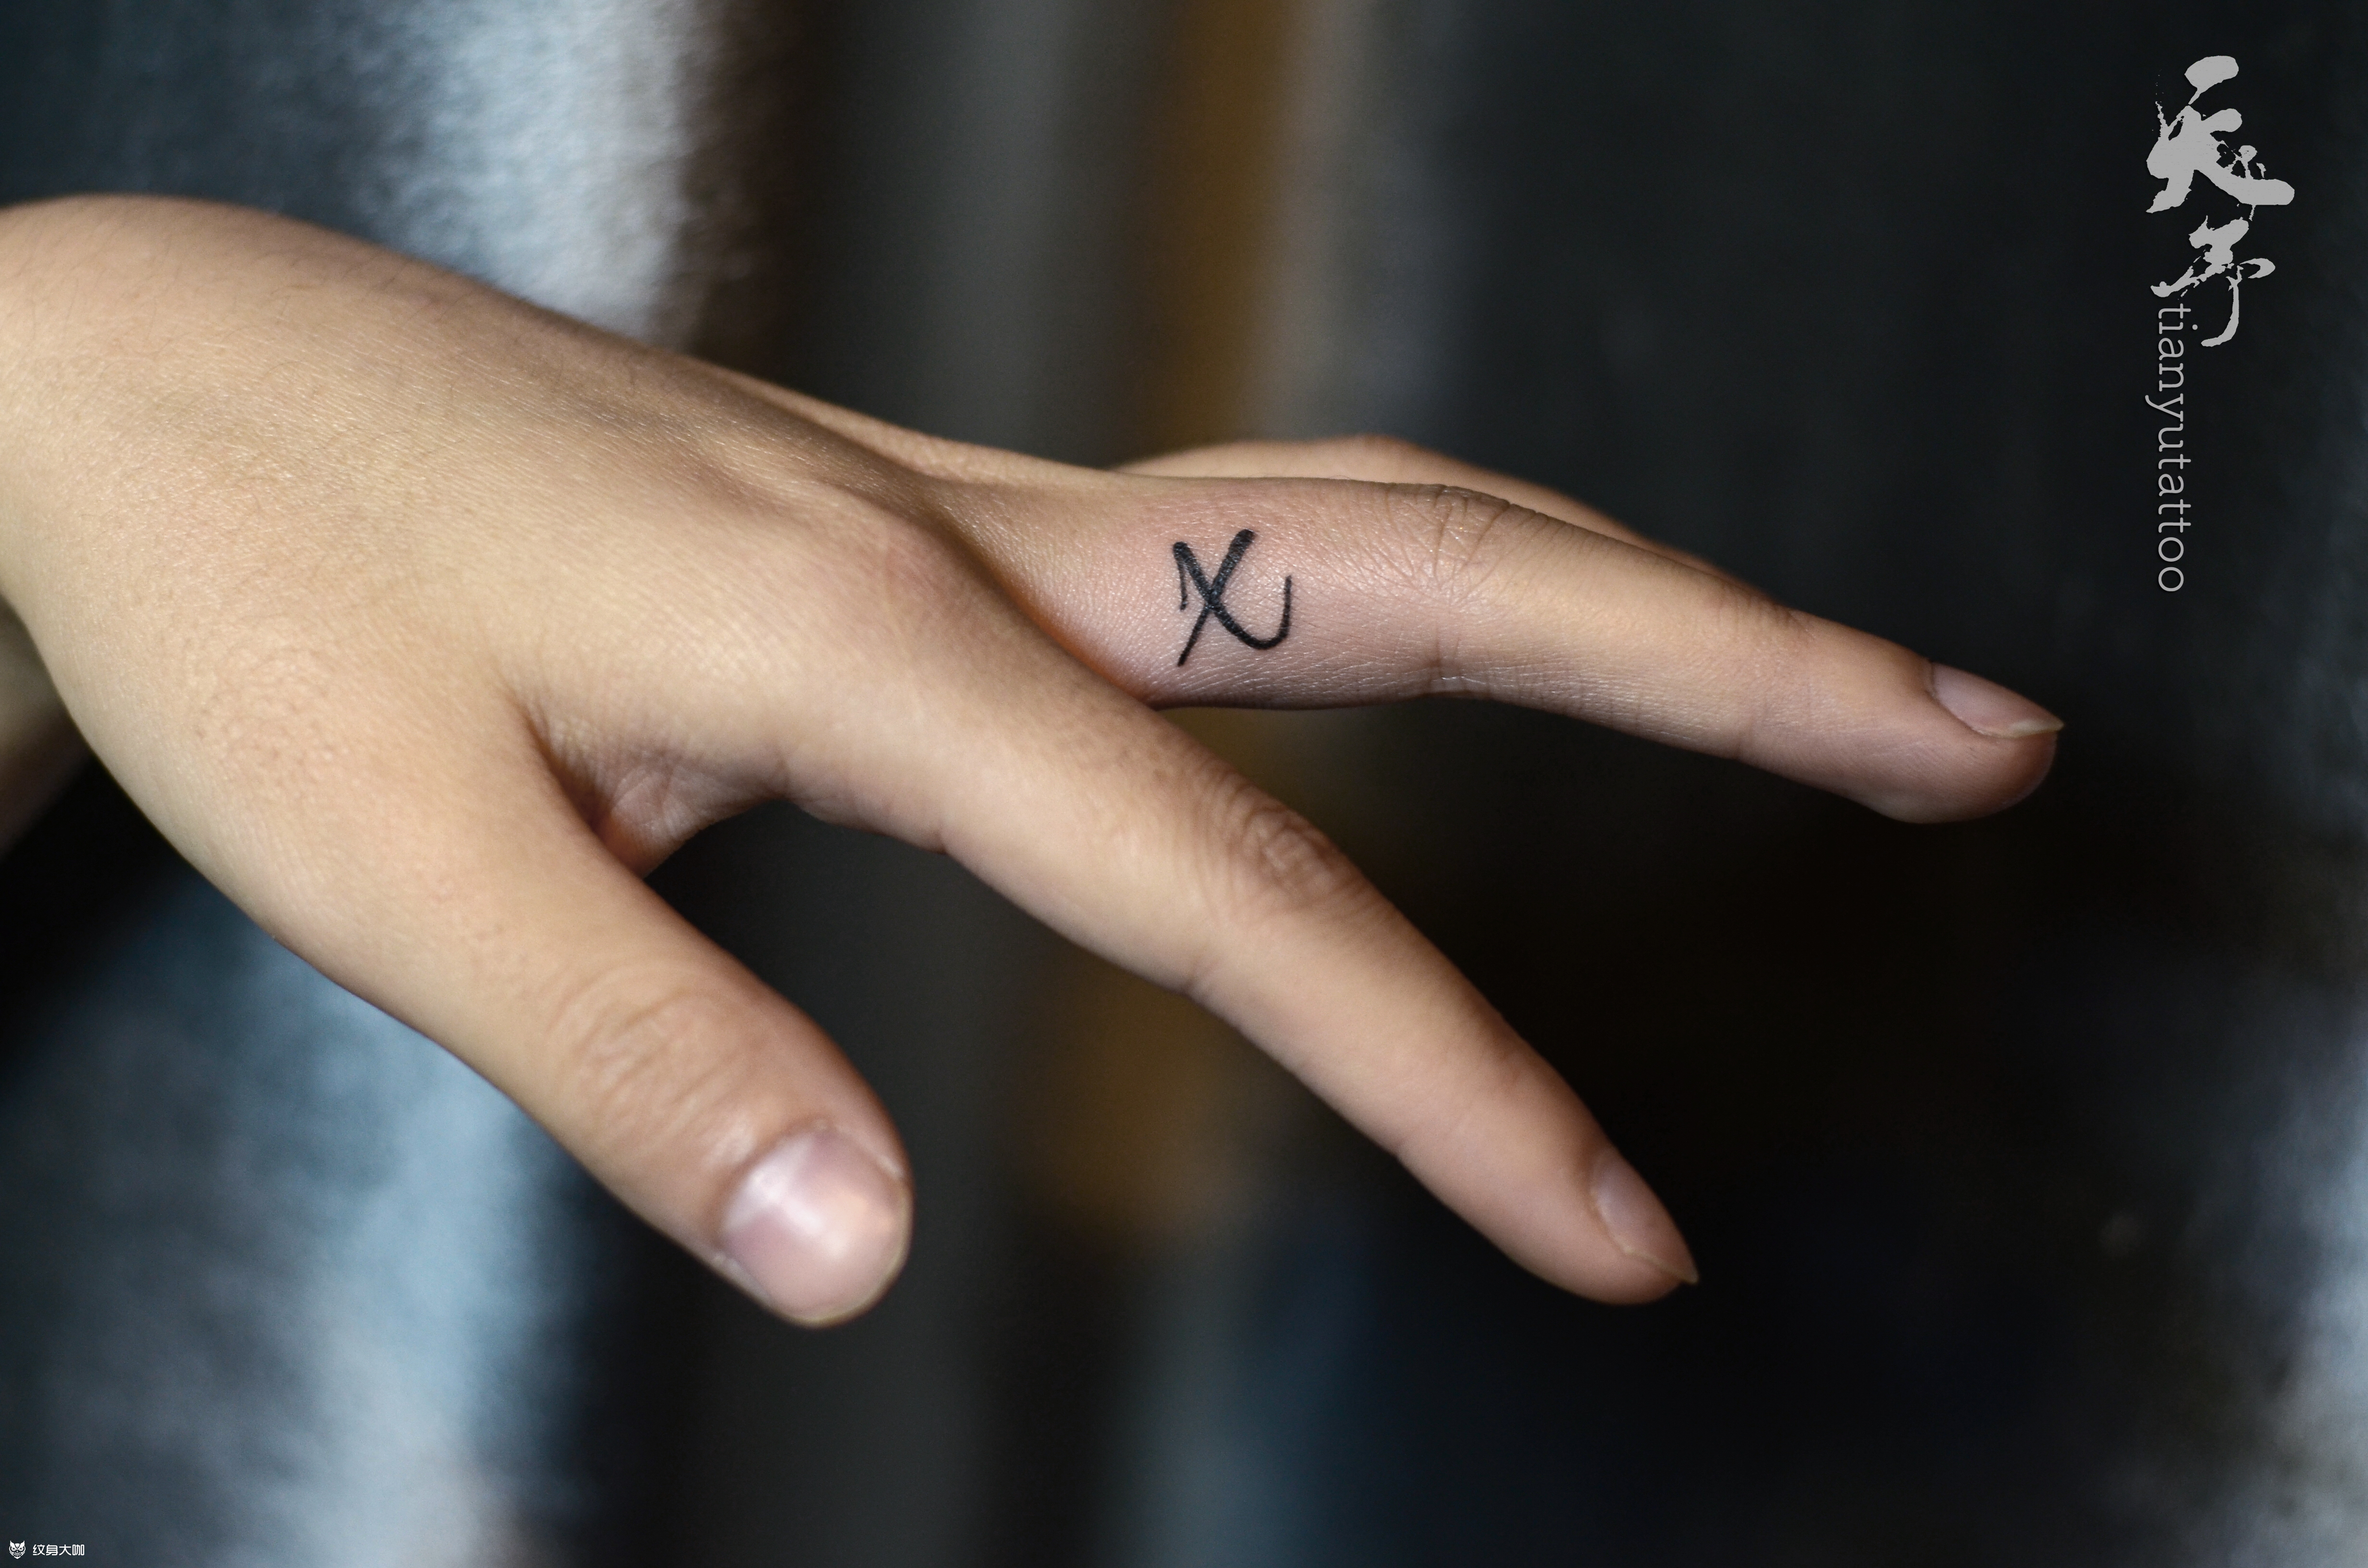 字母xy纹身图案图片